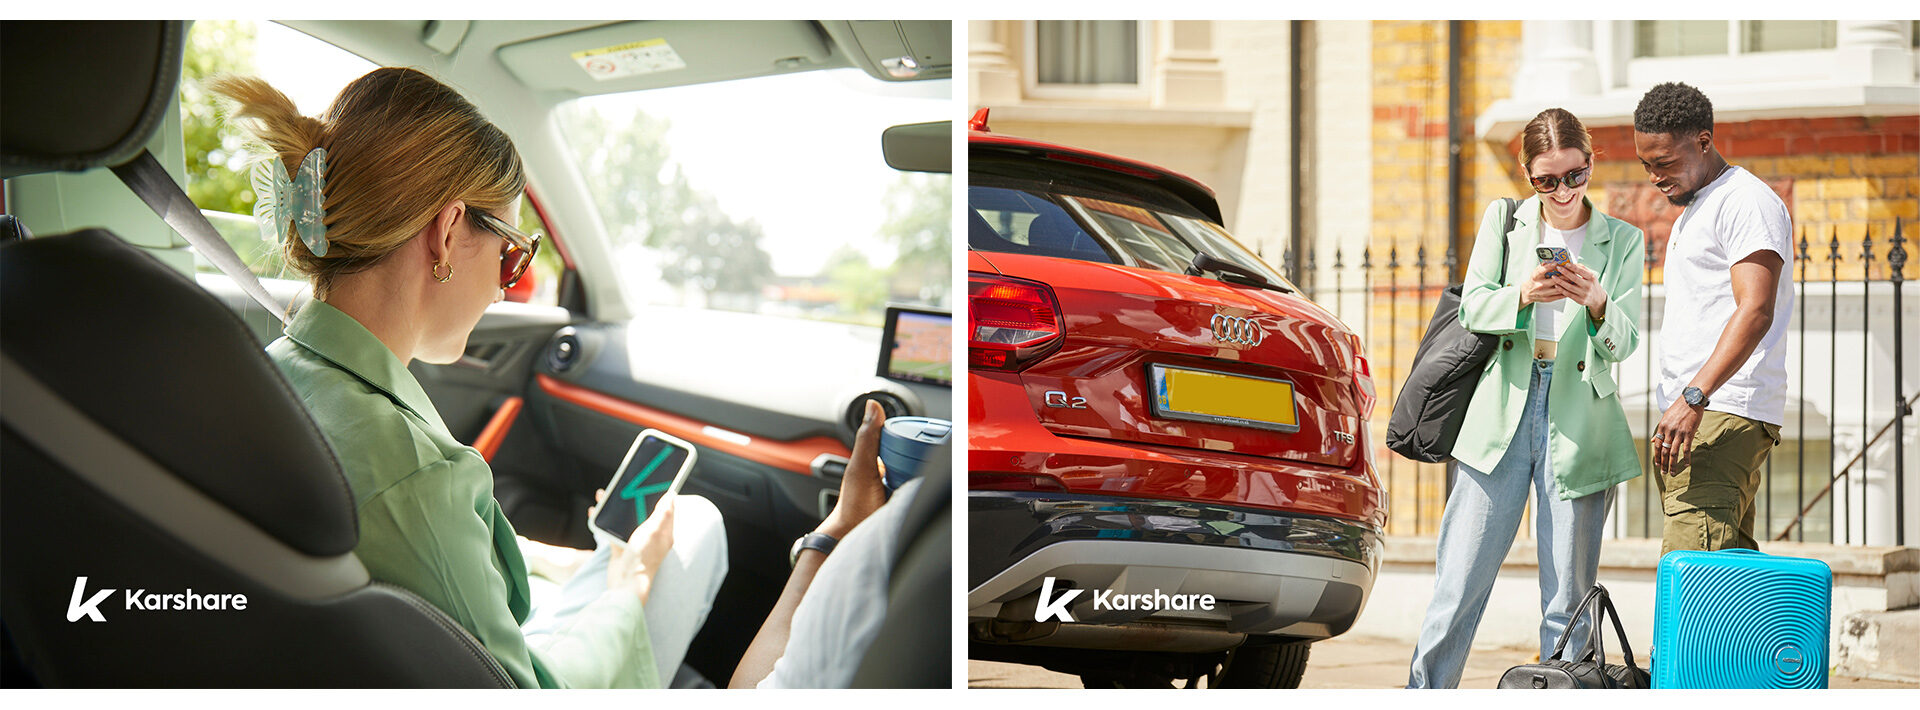 Karshare photography london car sharing rental